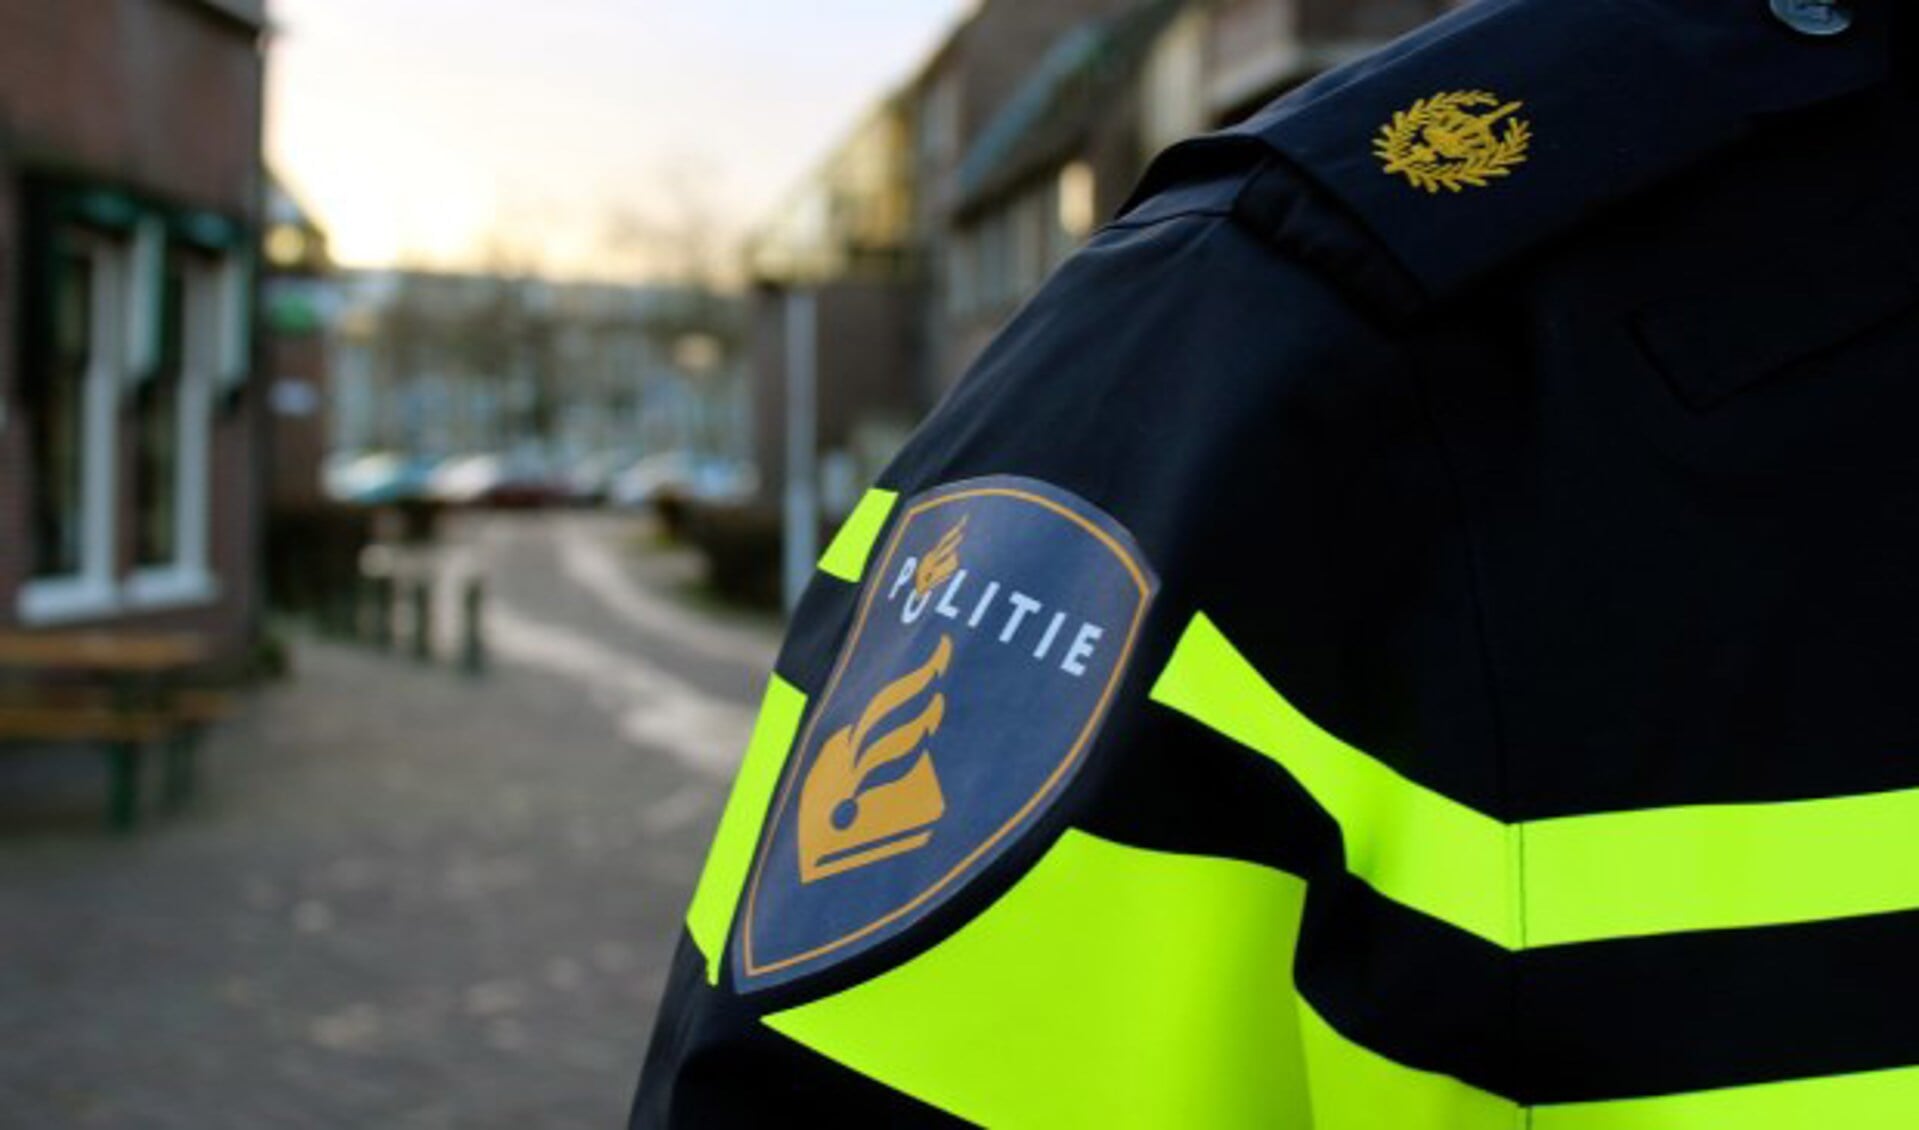 De politie verrichtte een arrestatie in Cuijk.